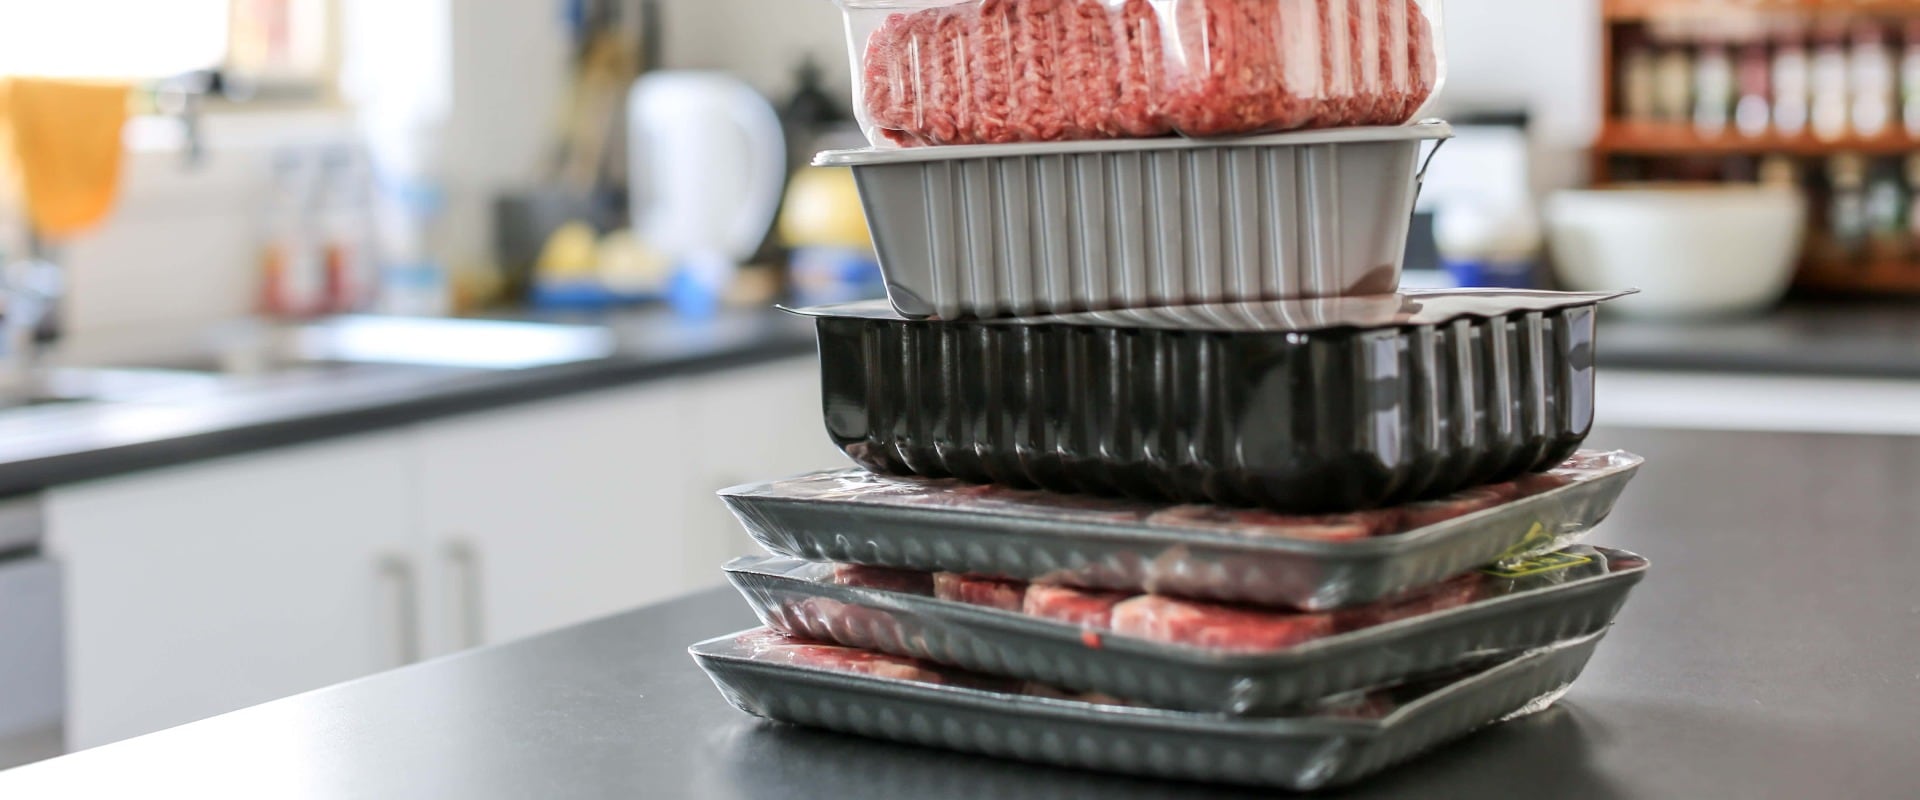 Fleisch in Plastikverpackung auf einem Küchentisch